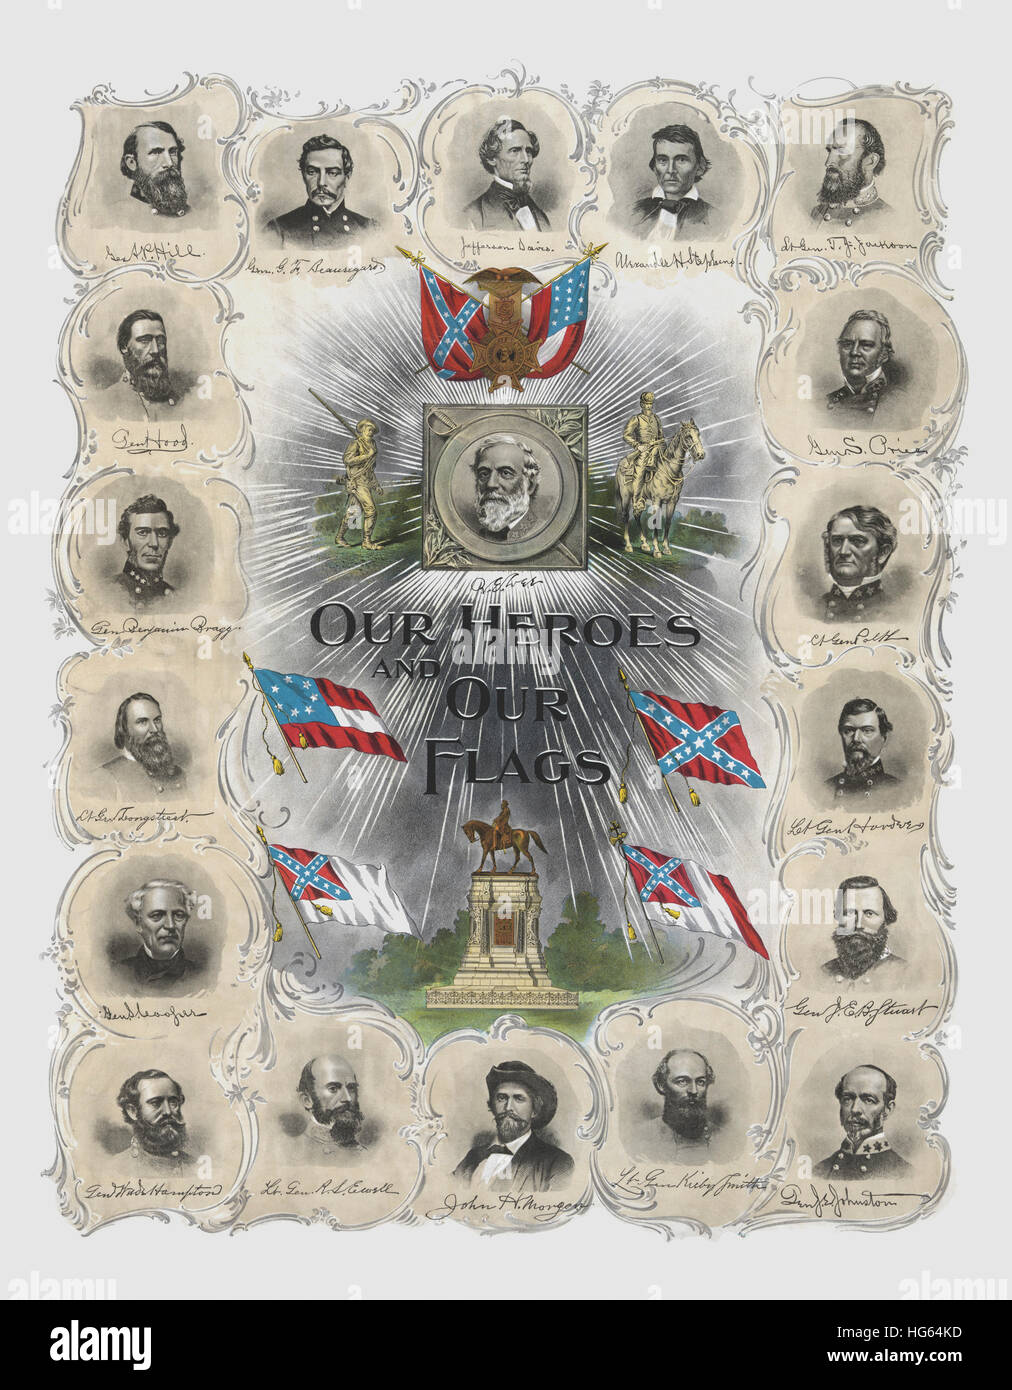 Stampa vintage di eminenti generali confederati e statisti. Foto Stock